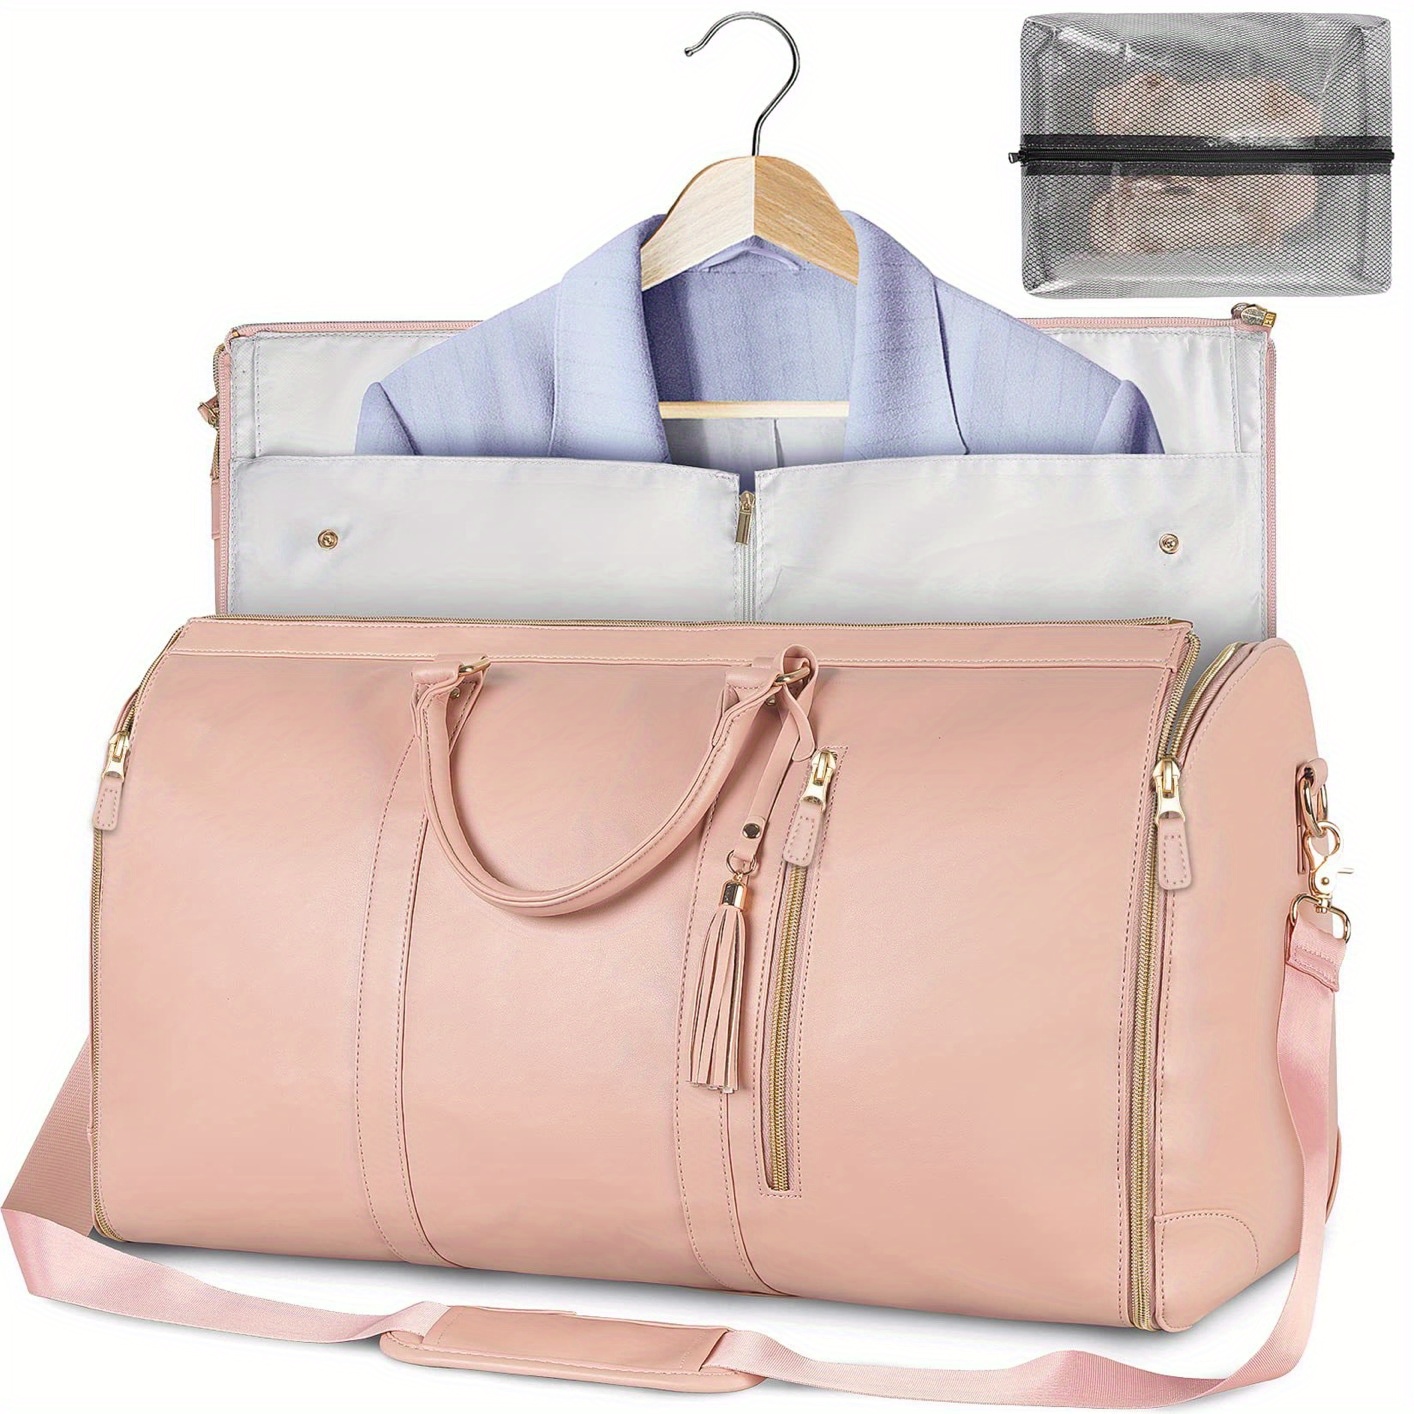 

Sac de voyage pliable multifonctionnel pour femme, grand sac de rangement avec compartiment à vêtements suspendu, bagage à main